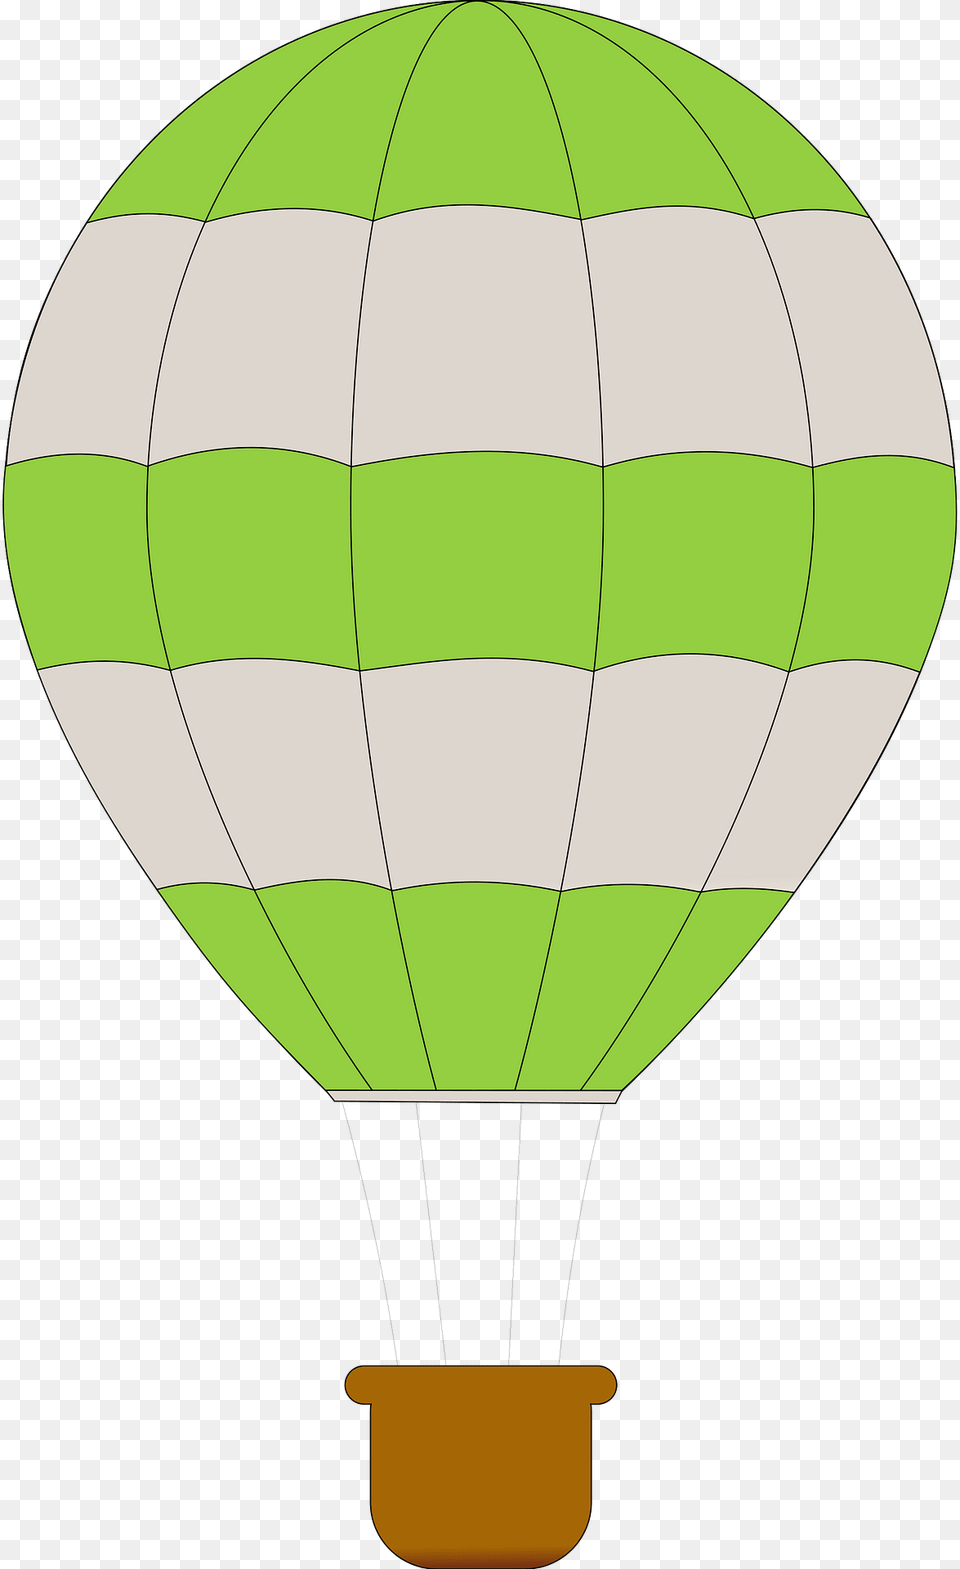 Balloon Clipart, Aircraft, Hot Air Balloon, Transportation, Vehicle Png